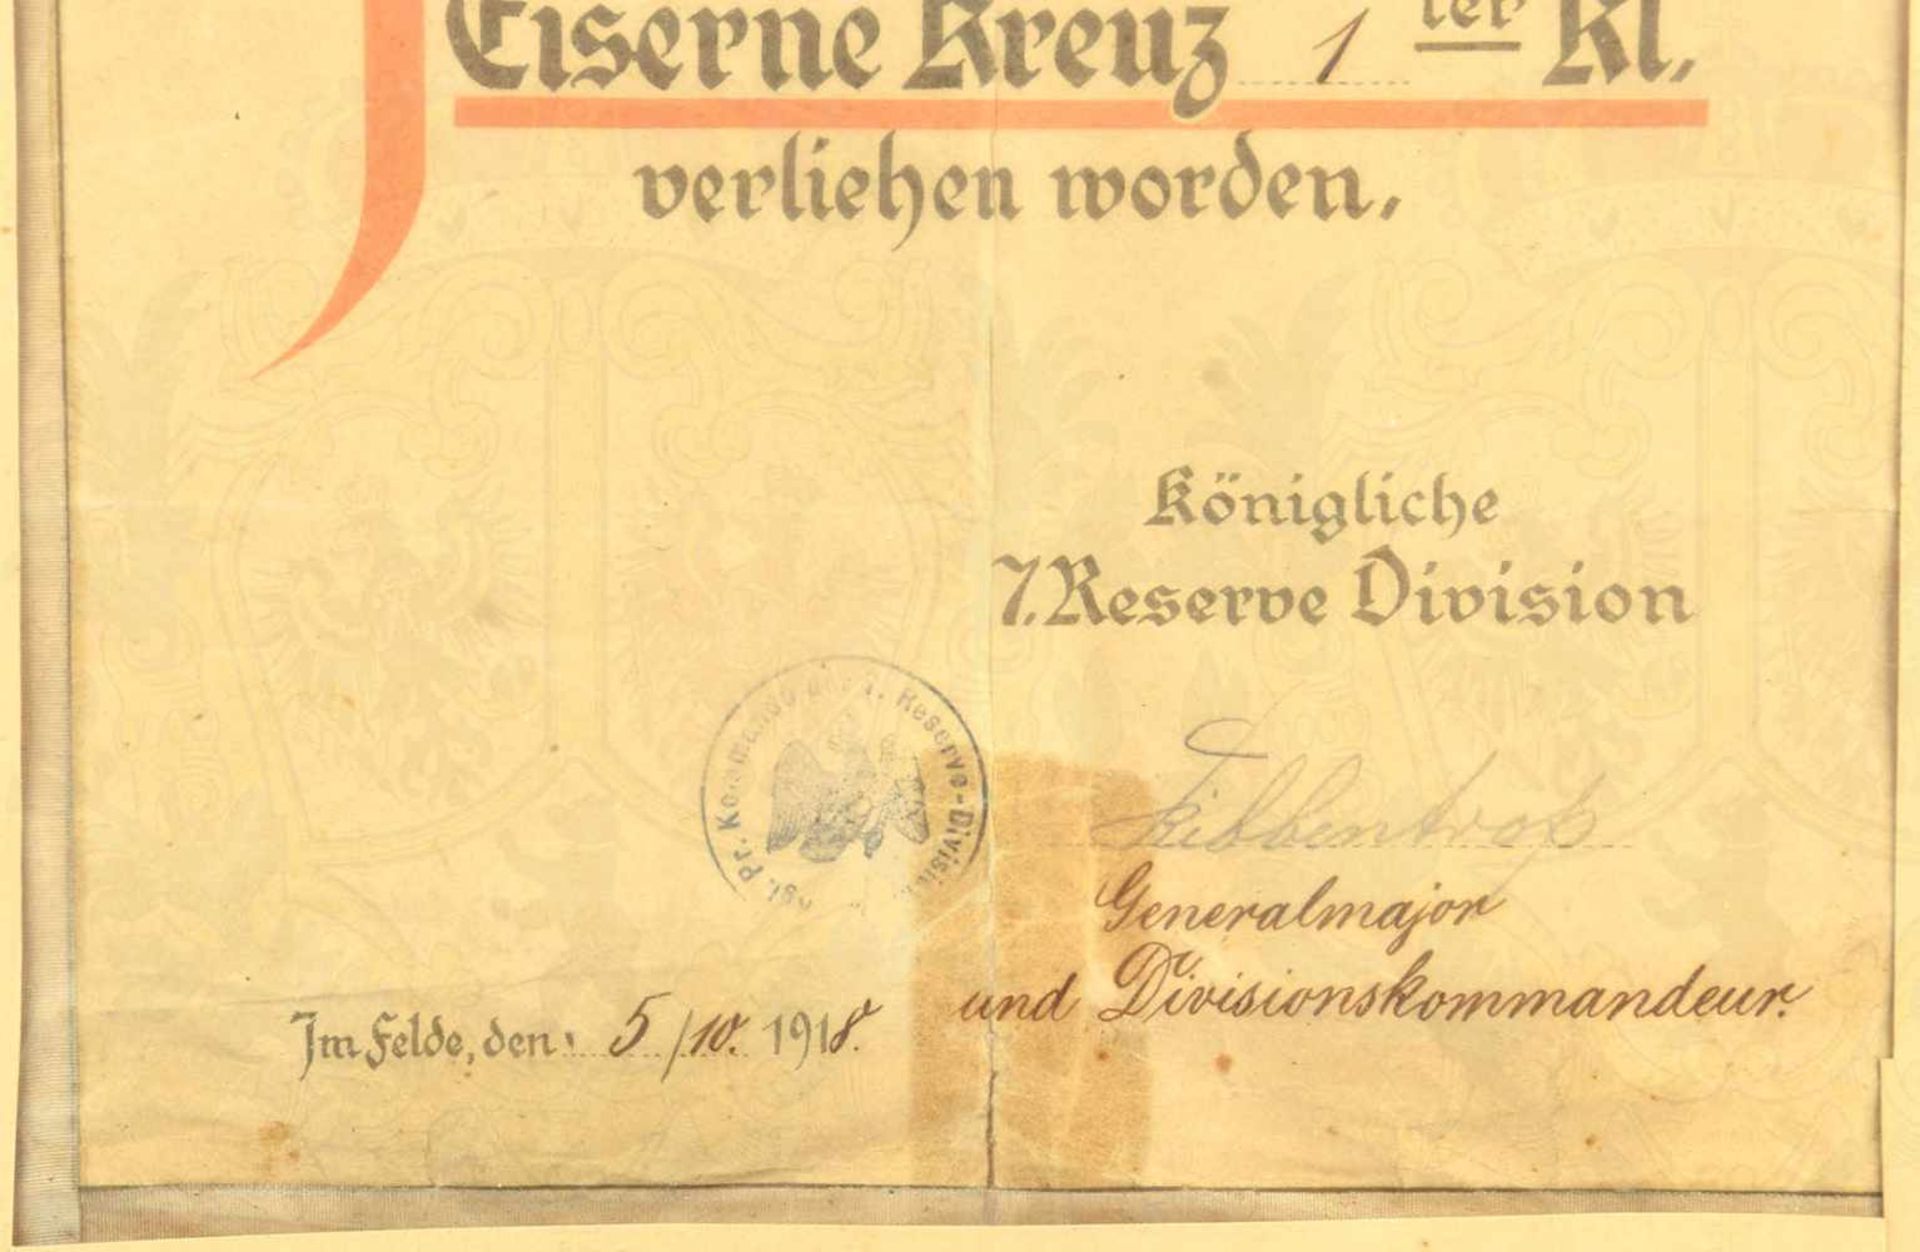 VERLEIHUNGSURKUNDE EK I 1914, für e. Leutnant d.R. der 7. Res.-Div., Schmuckblatt m. s/w/r - Bild 2 aus 2